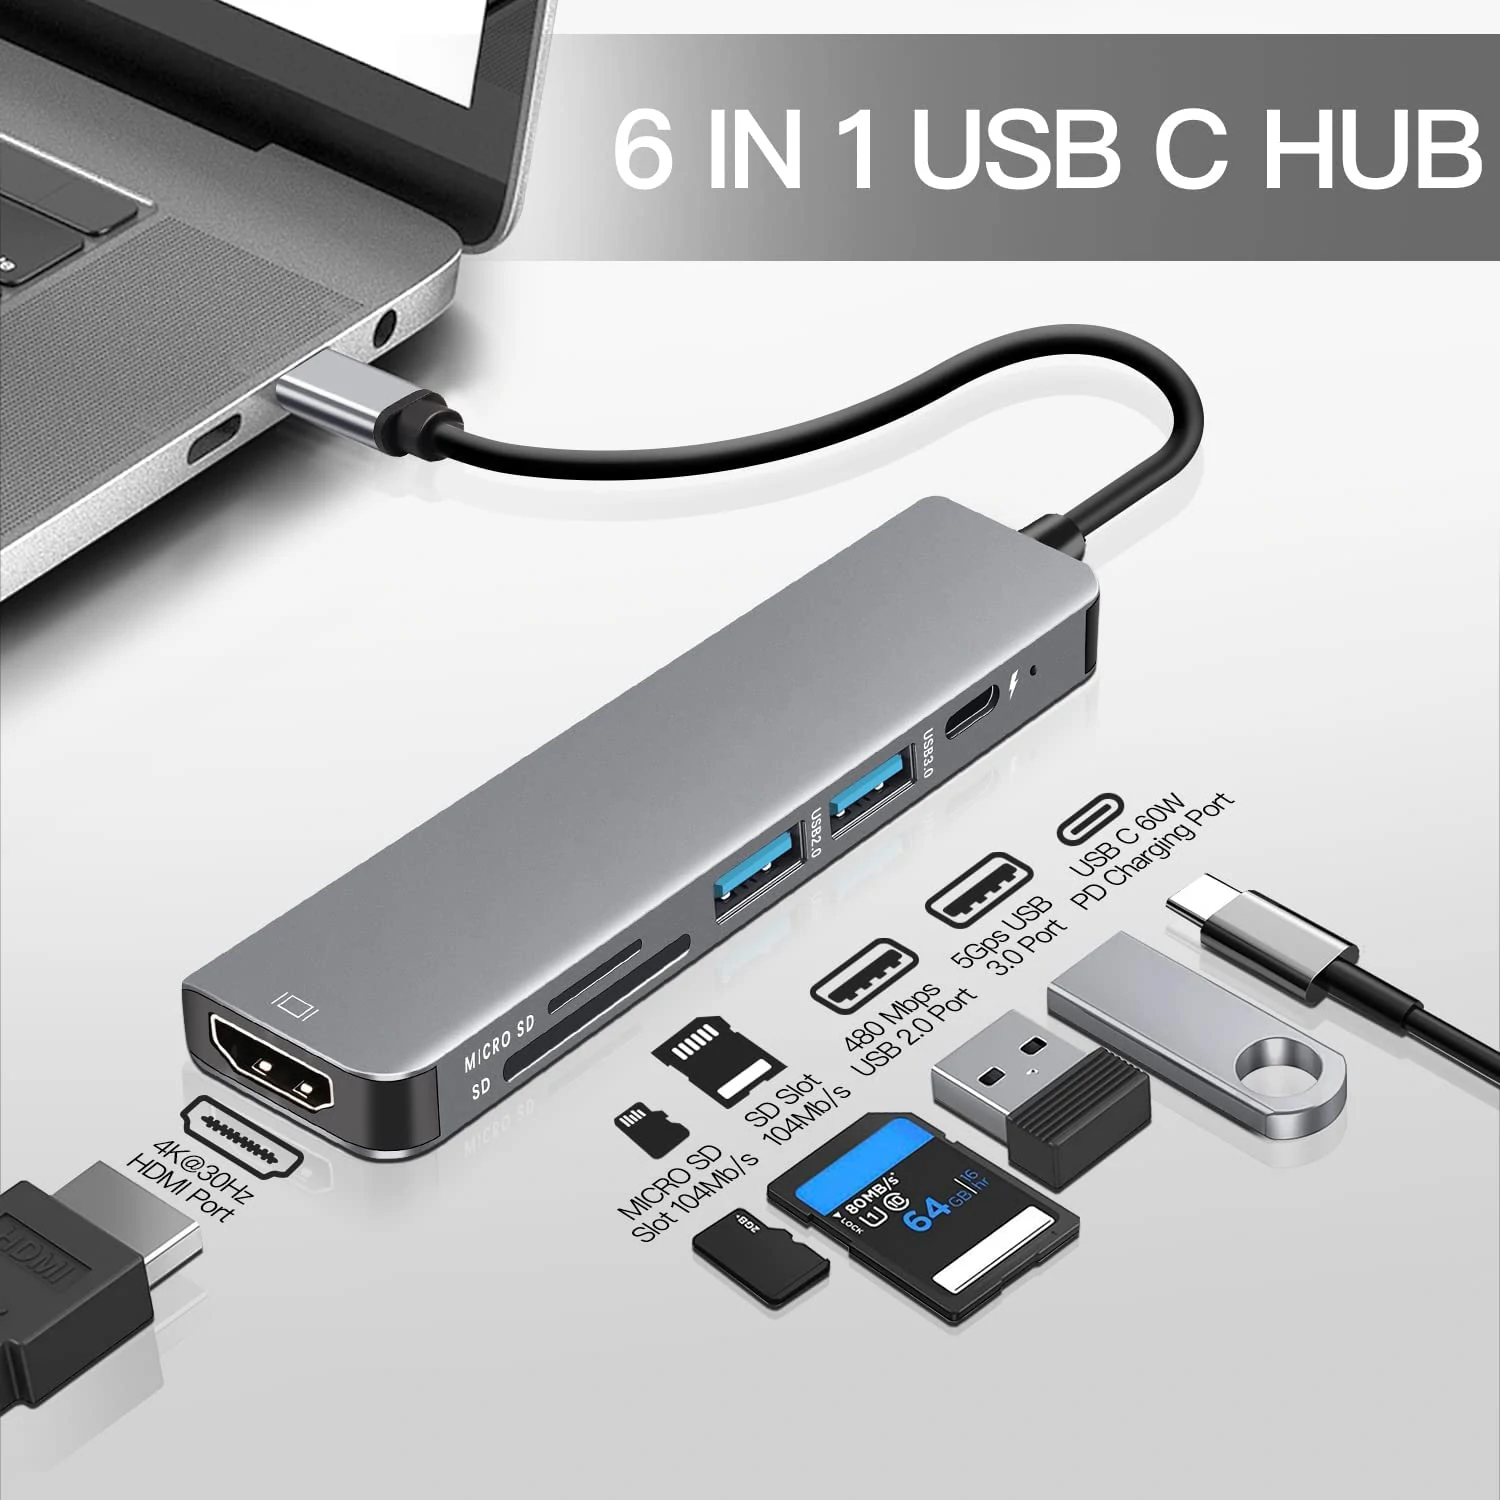 Bakeey 6 合 1 USB-C 扩展坞是近年来最好的扩展坞之一